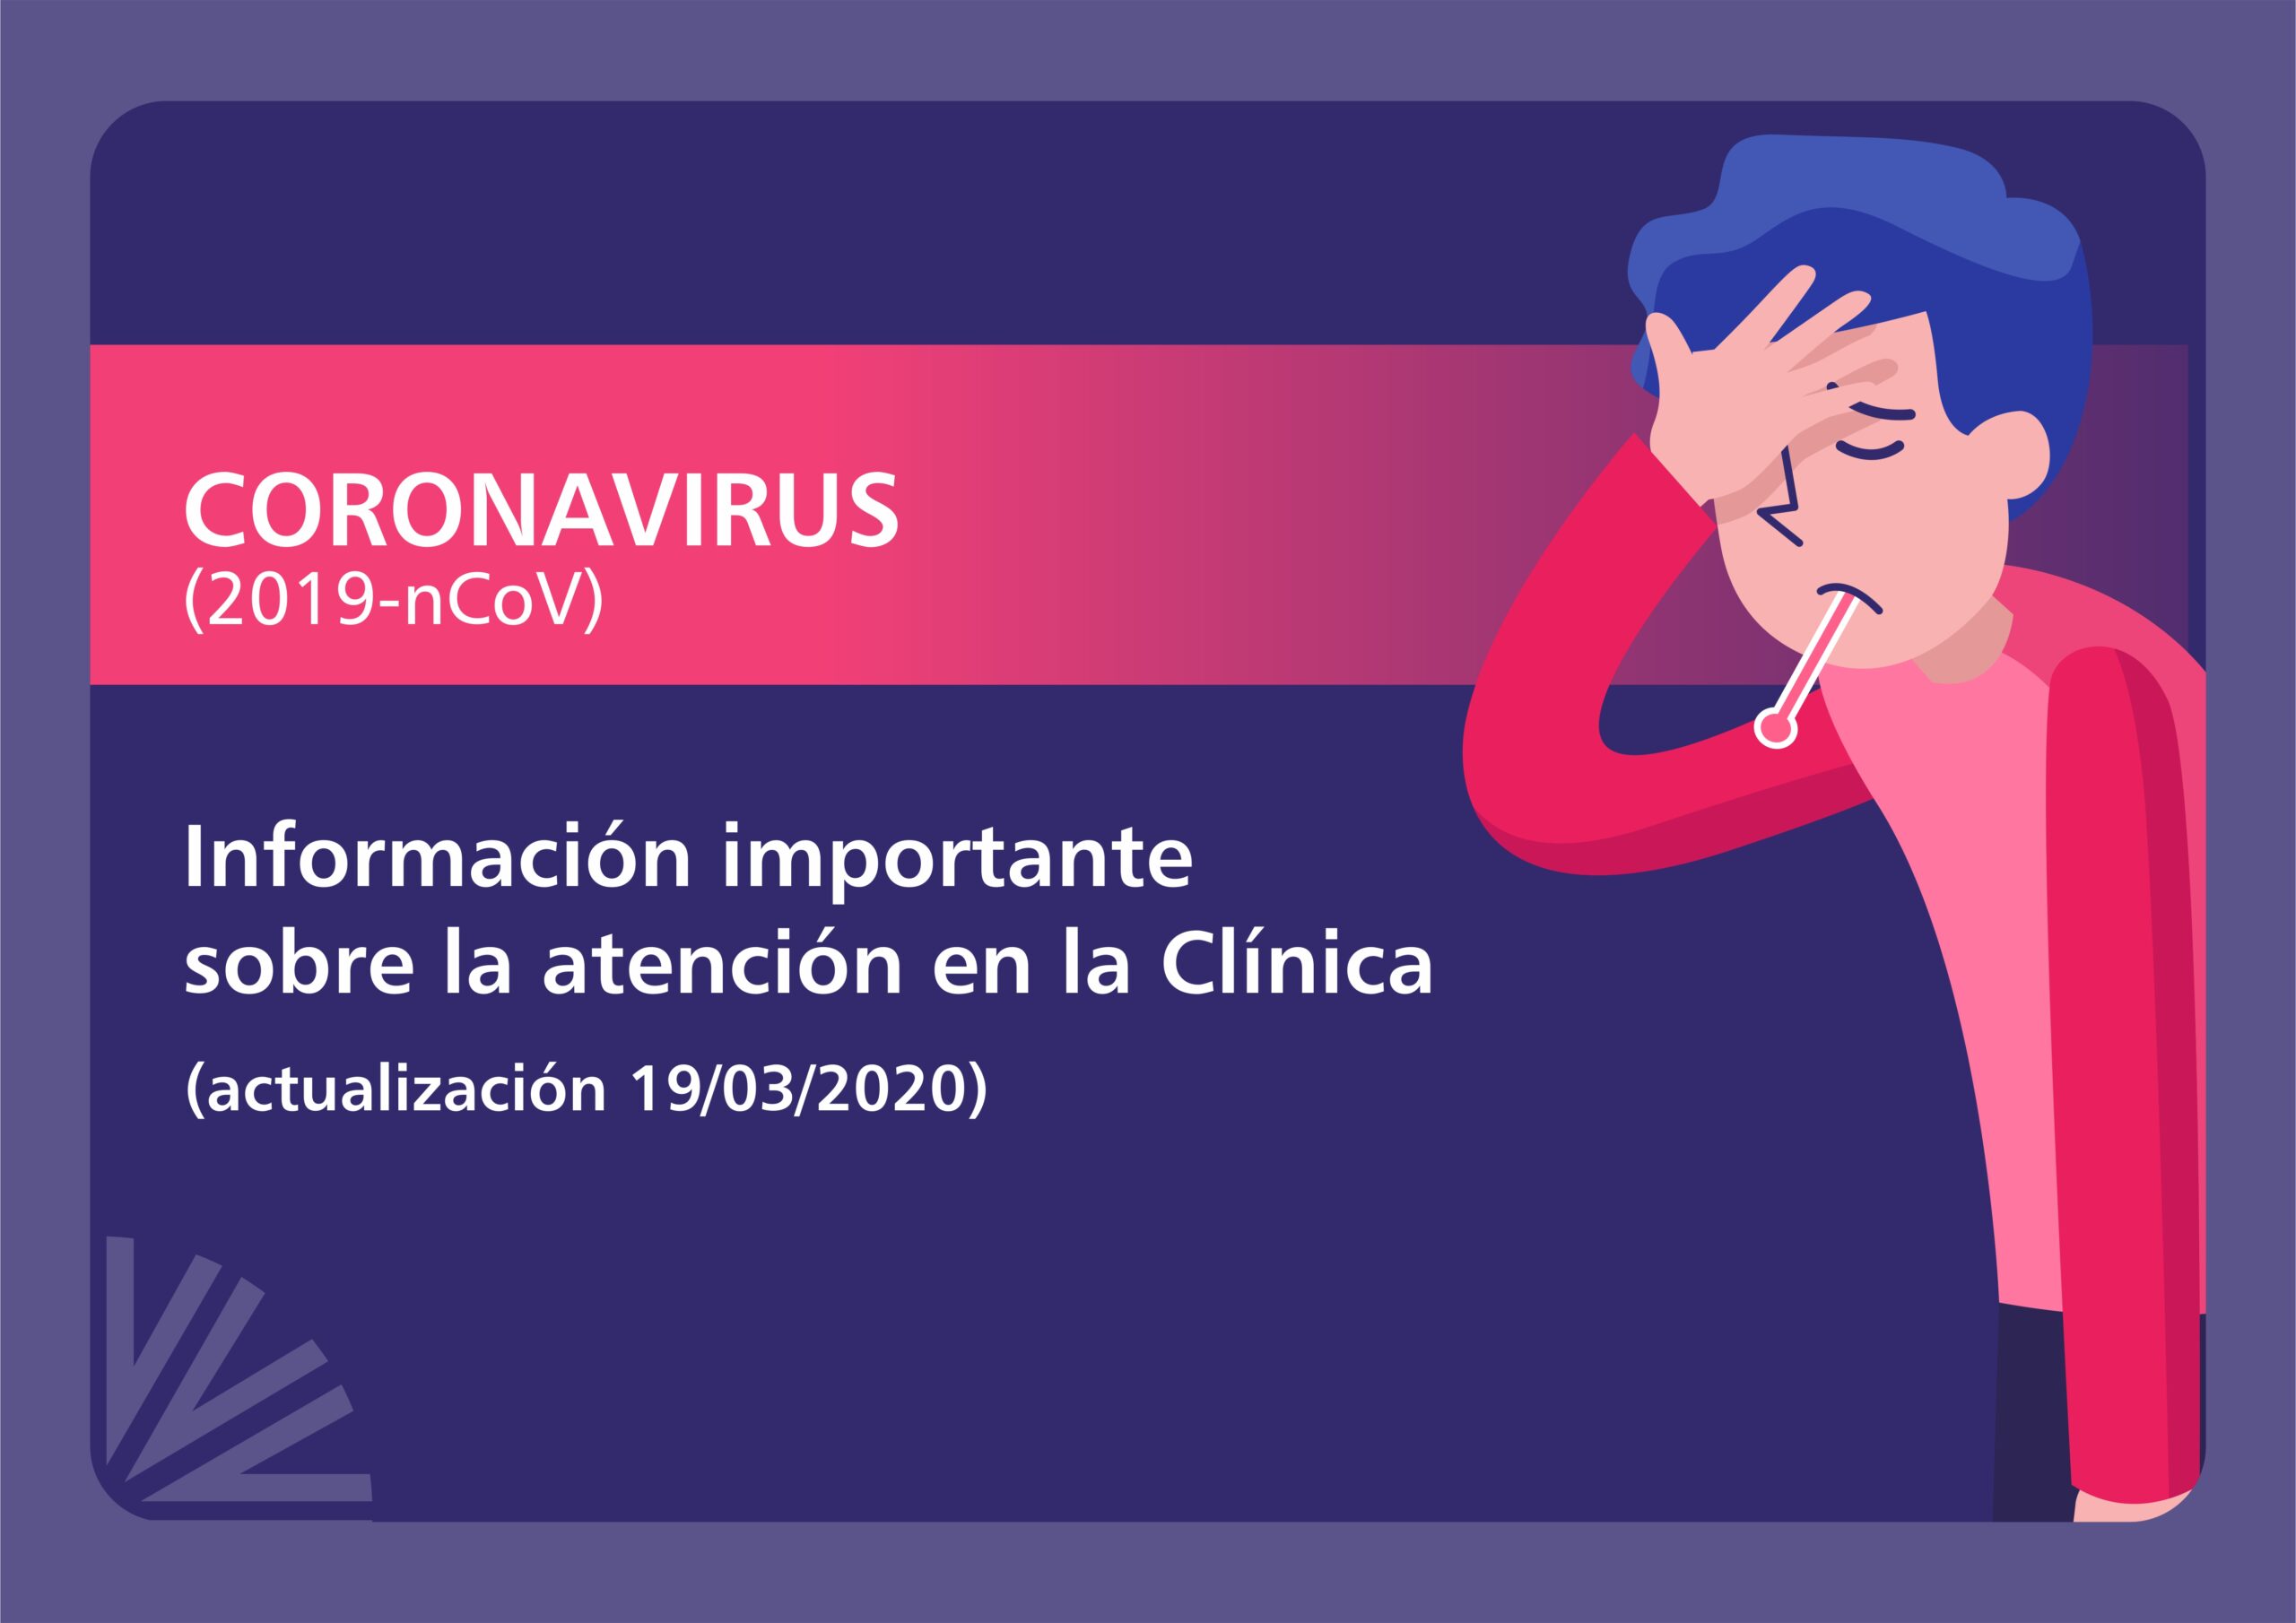 Coronavirus (20/03/2020)